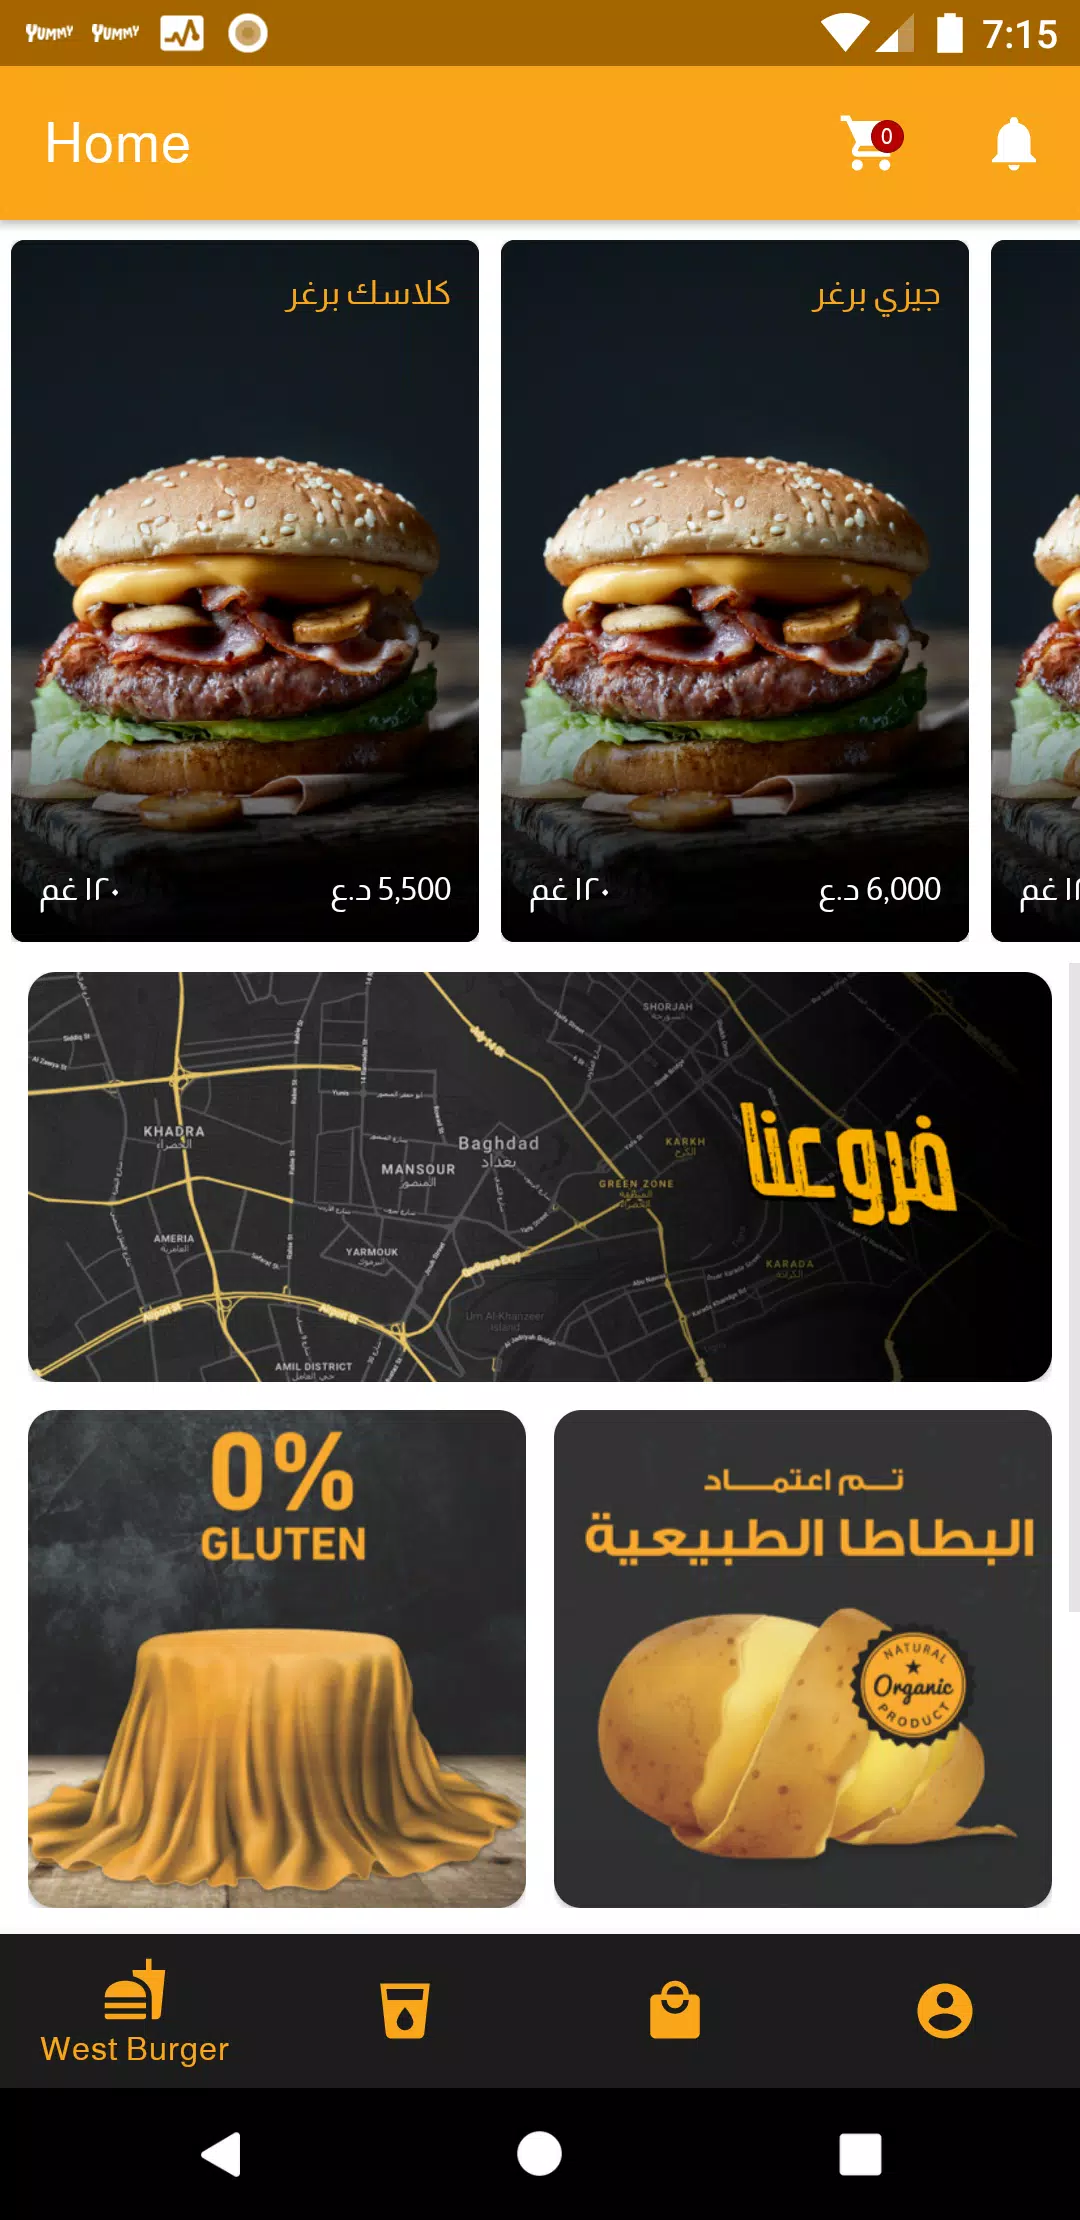 West Burger APK pour Android Télécharger